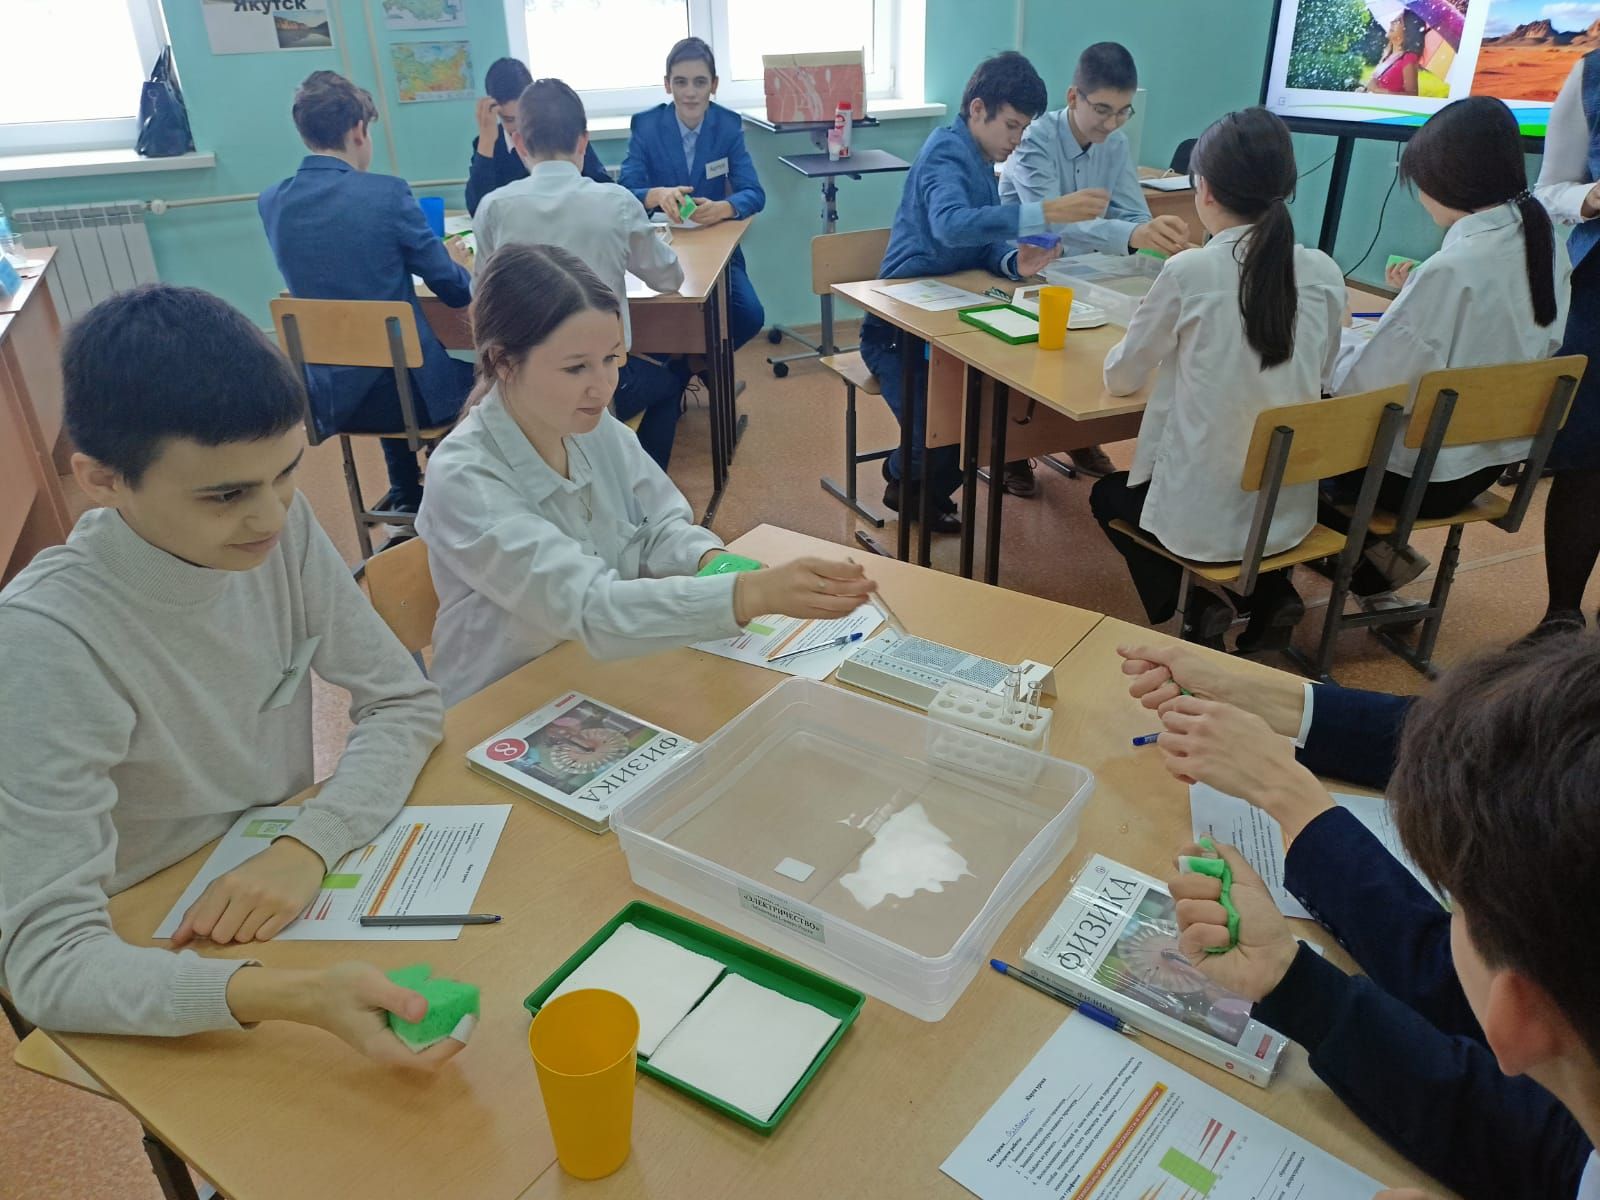 В Азнакаево проходит зональный этап конкурса профмастерства учителей